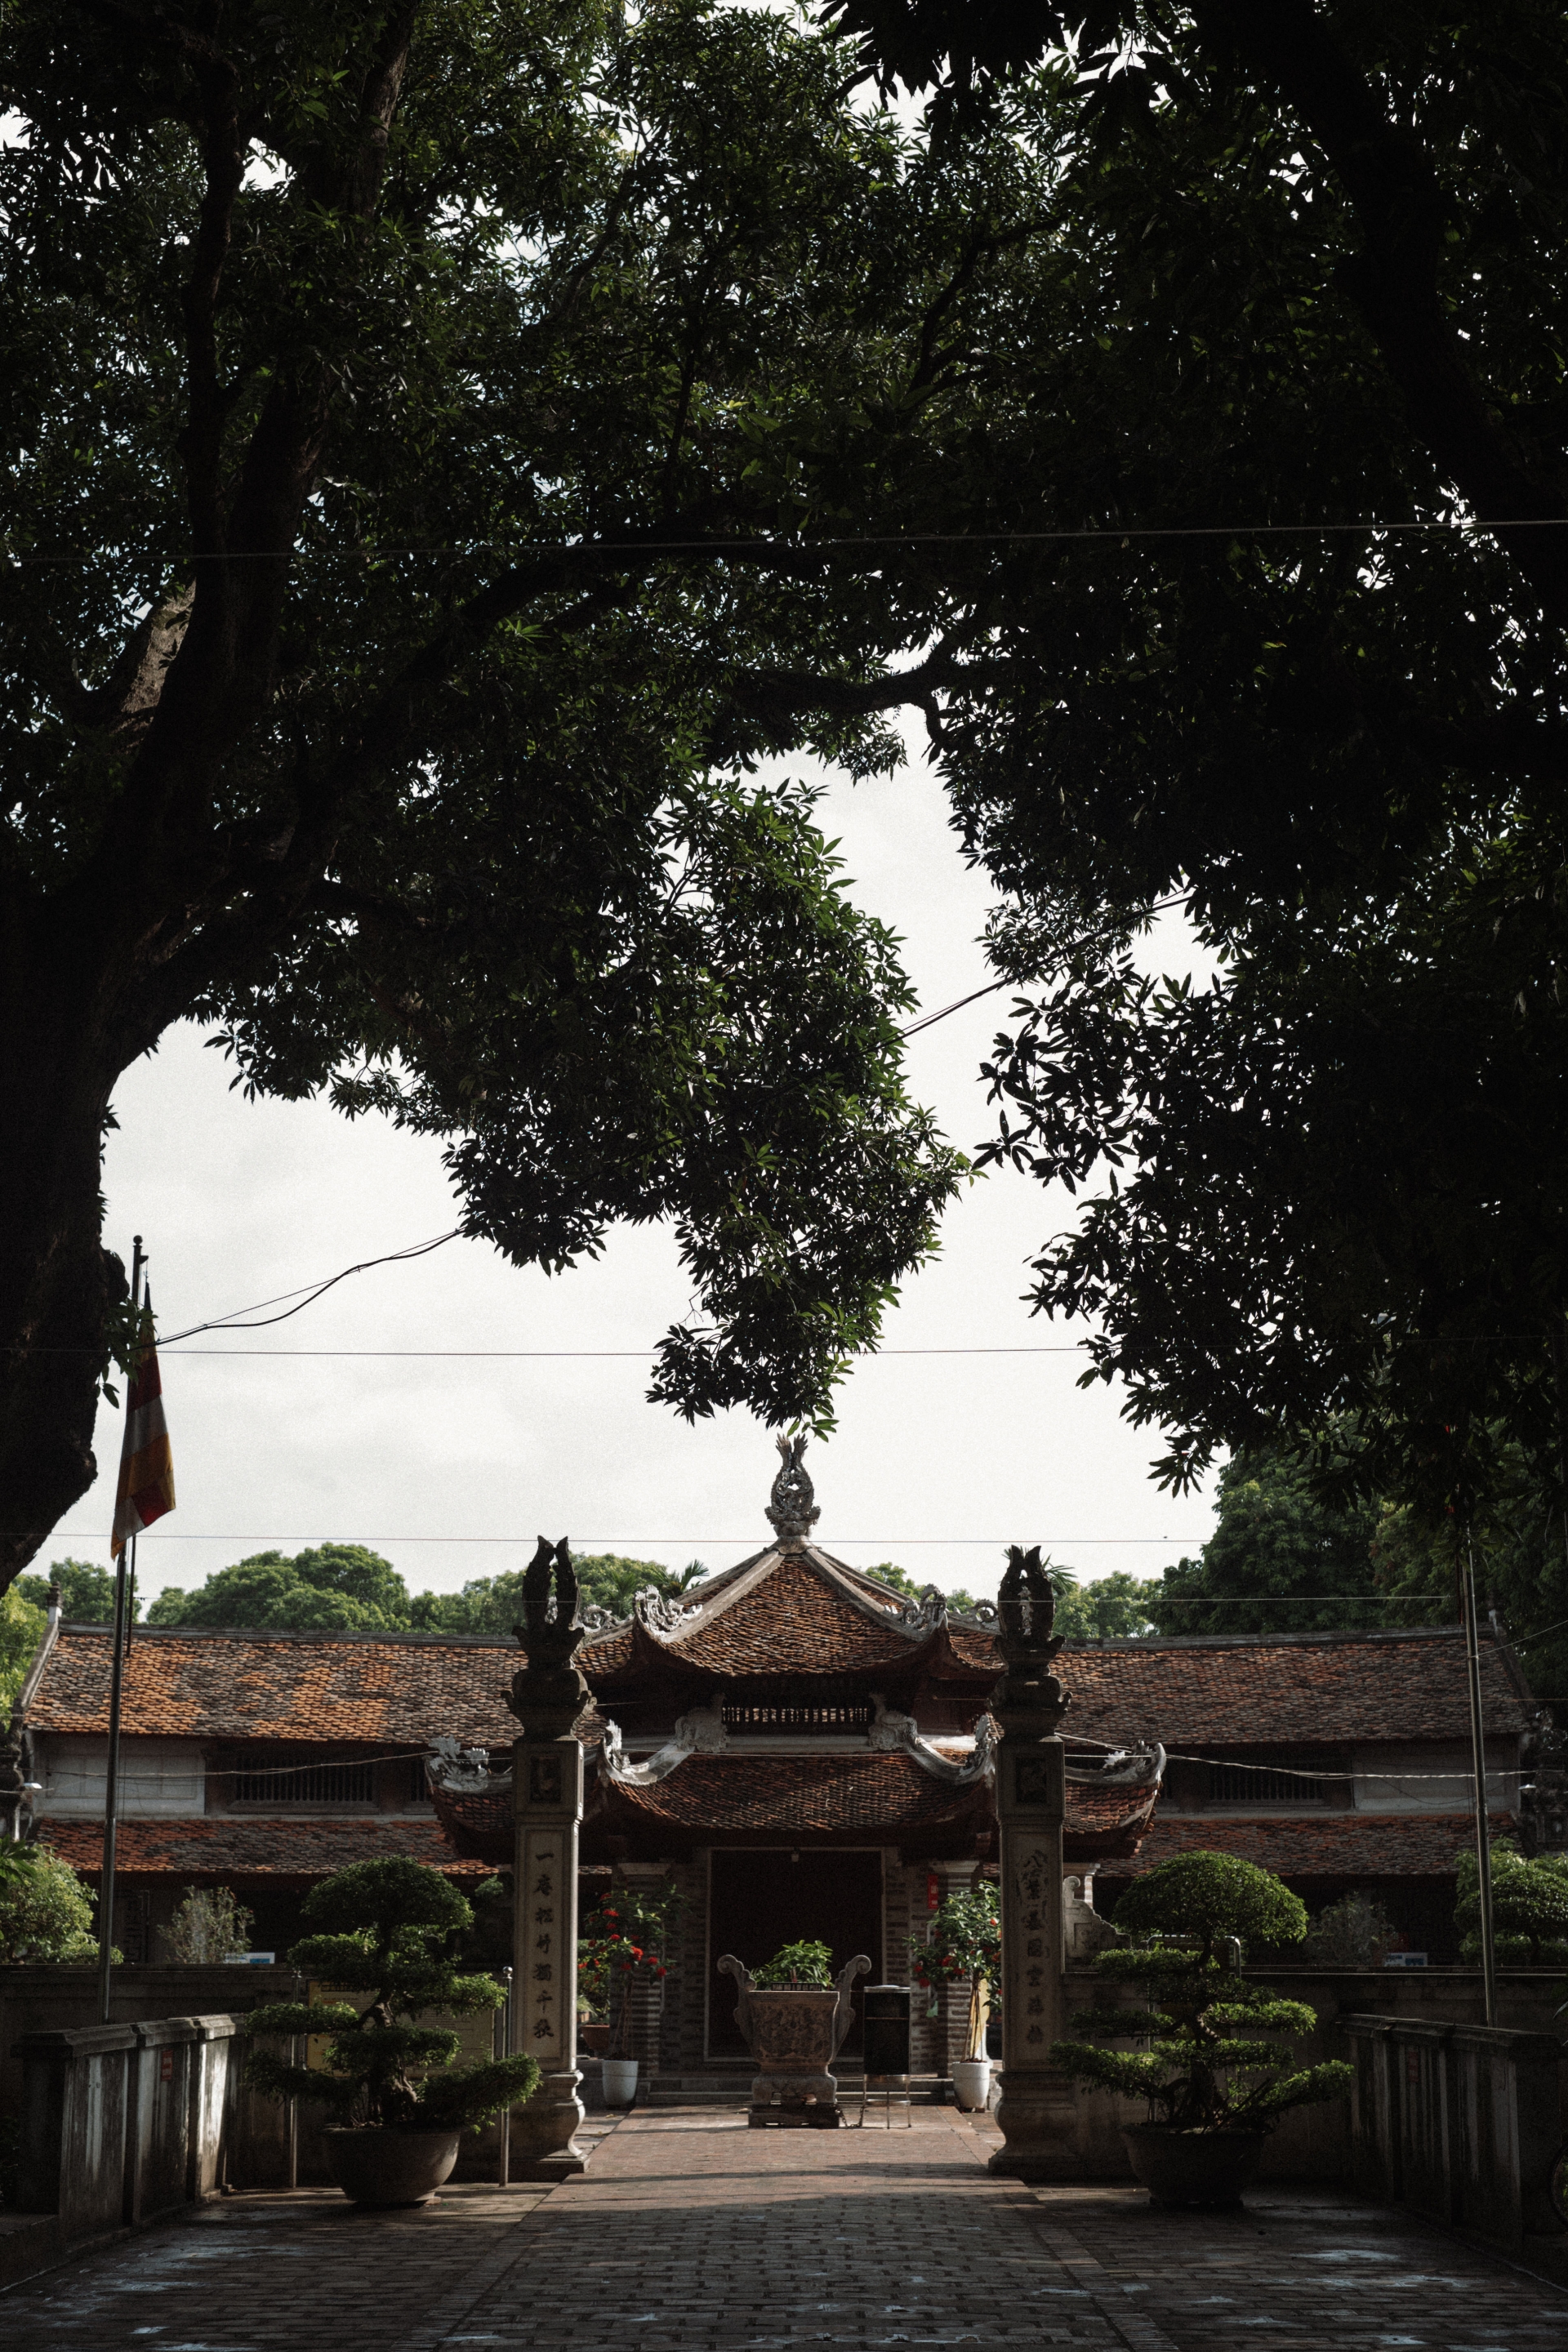 Đầu năm du xuân 'đệ nhất tùng lâm', ngôi chùa 900 tuổi đẹp nhất của Hà Nội xưa